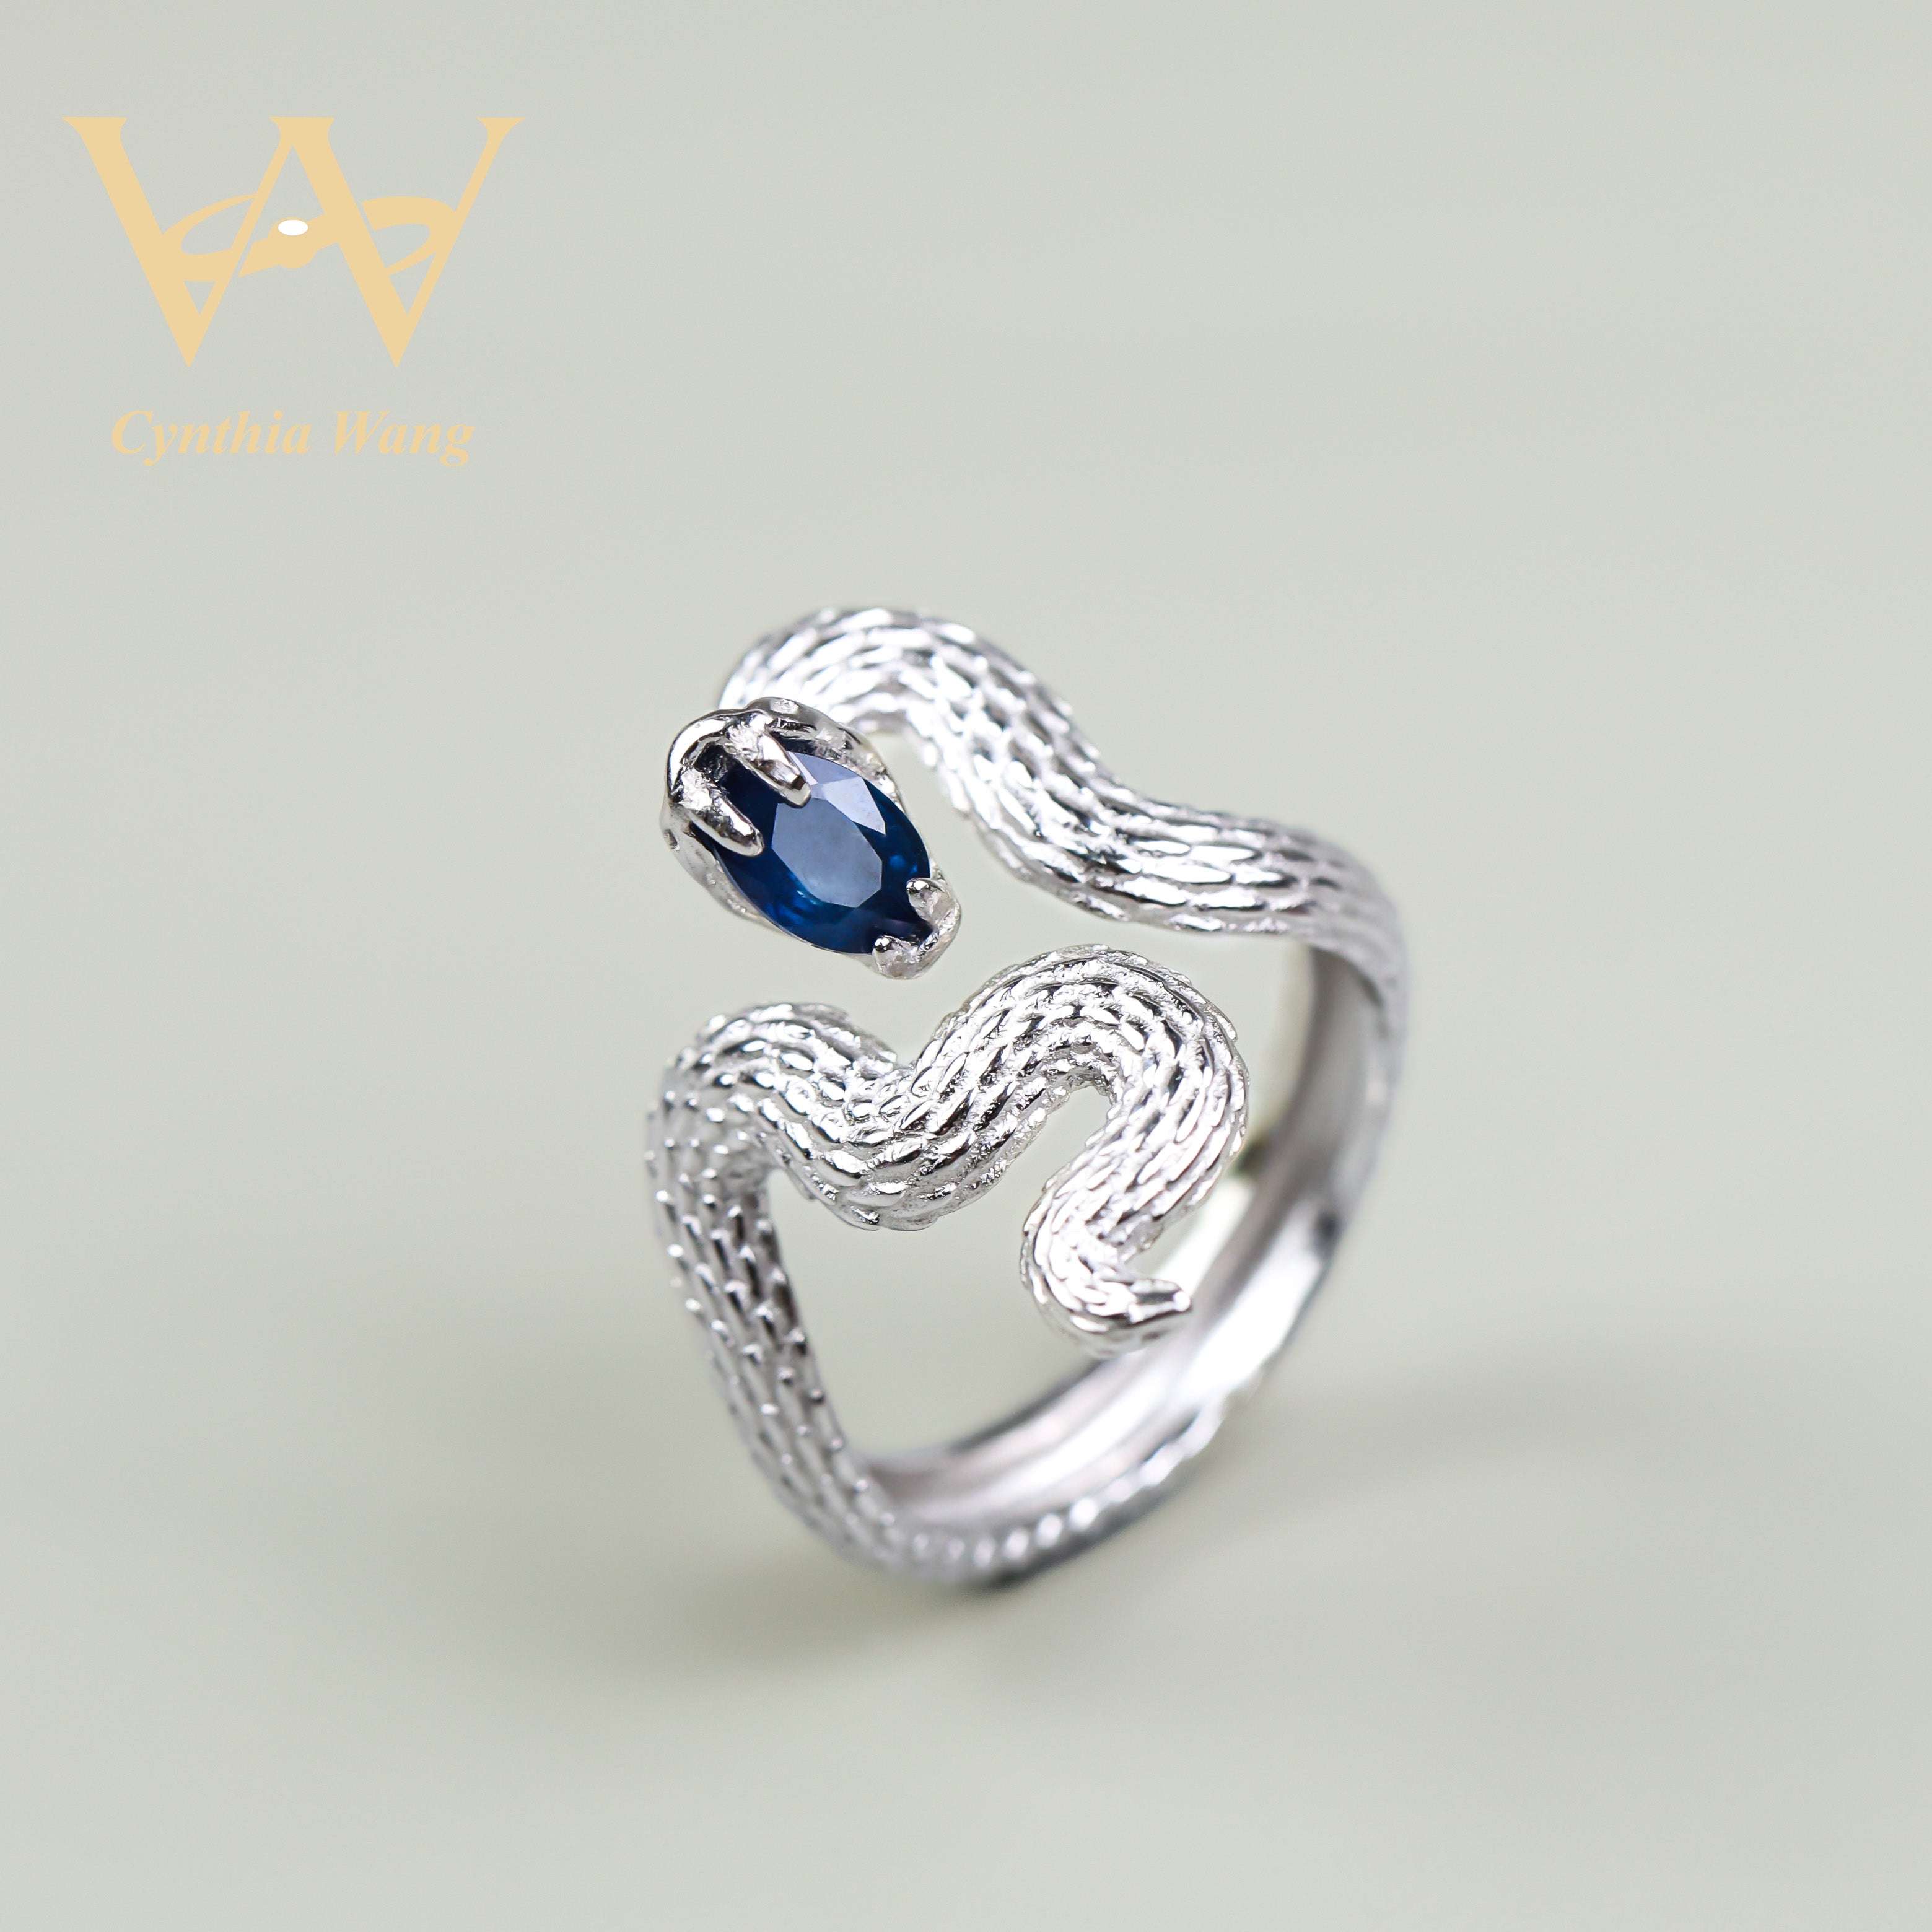 'Charming Danger' Blue Sapphire Ring